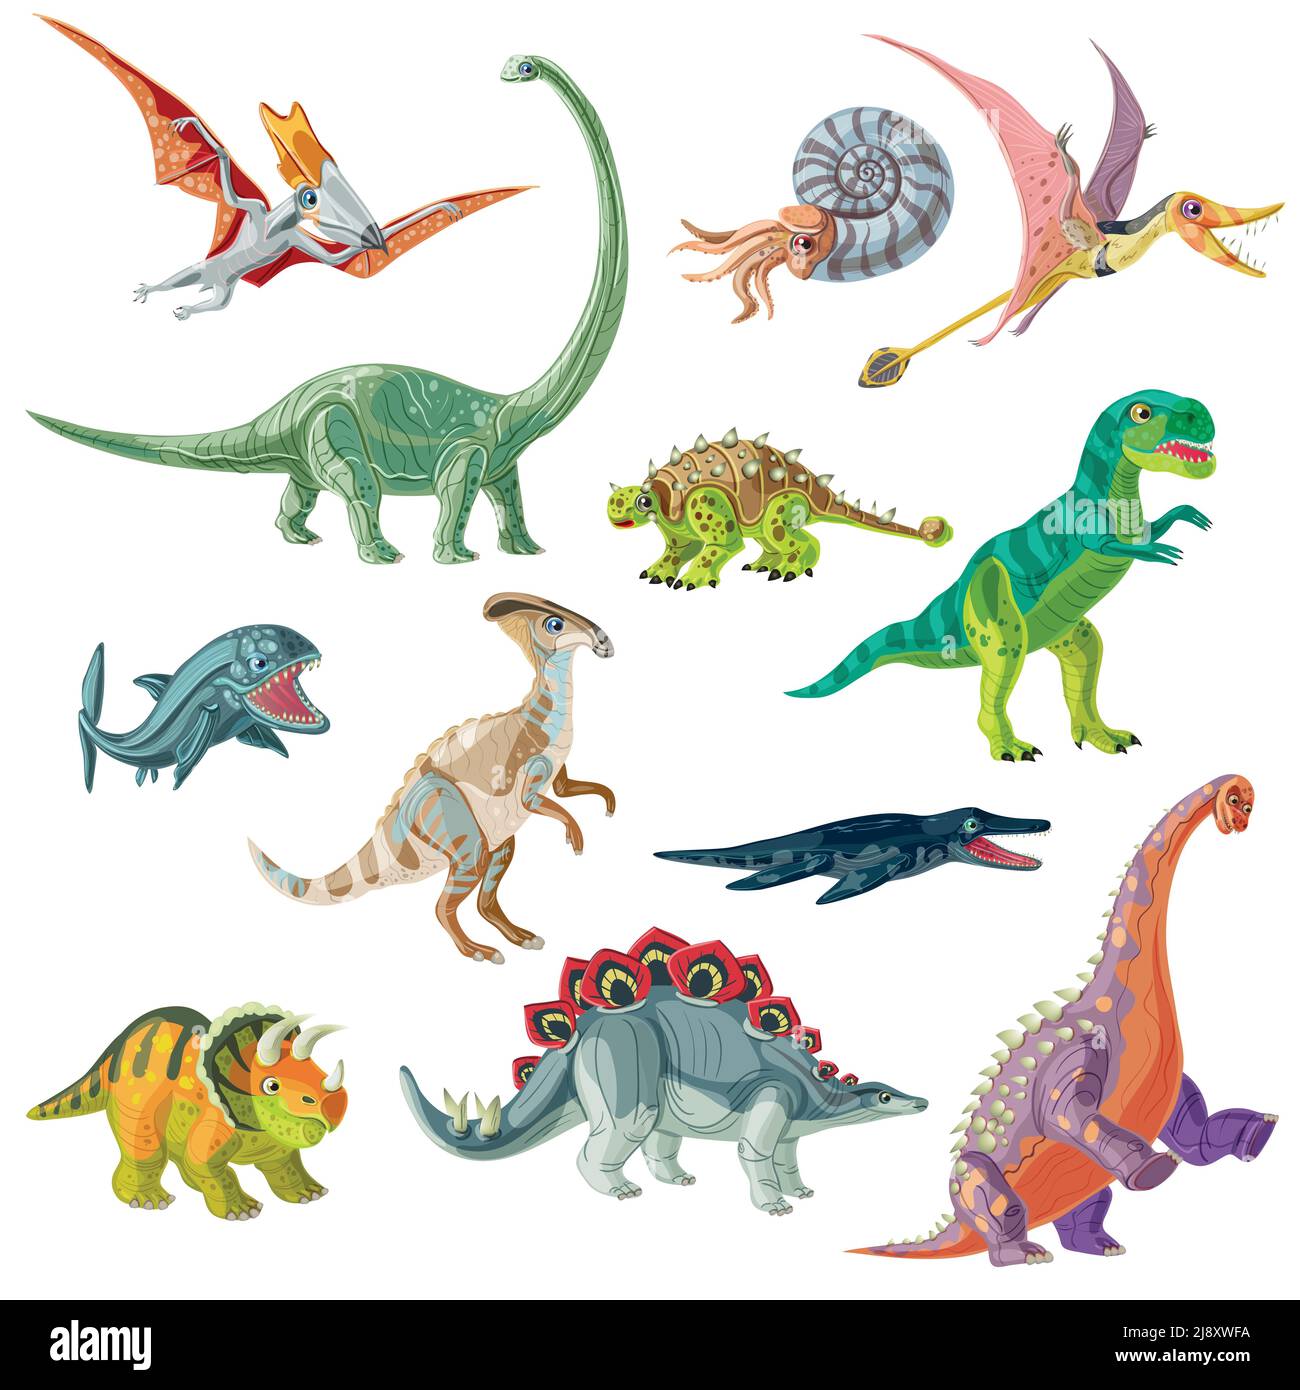 Animaux jurassiques de la période avec ptérodactyl tyrannosaurus et brachiosaurus antique illustration vectorielle isolée de conques et de poissons géants Illustration de Vecteur